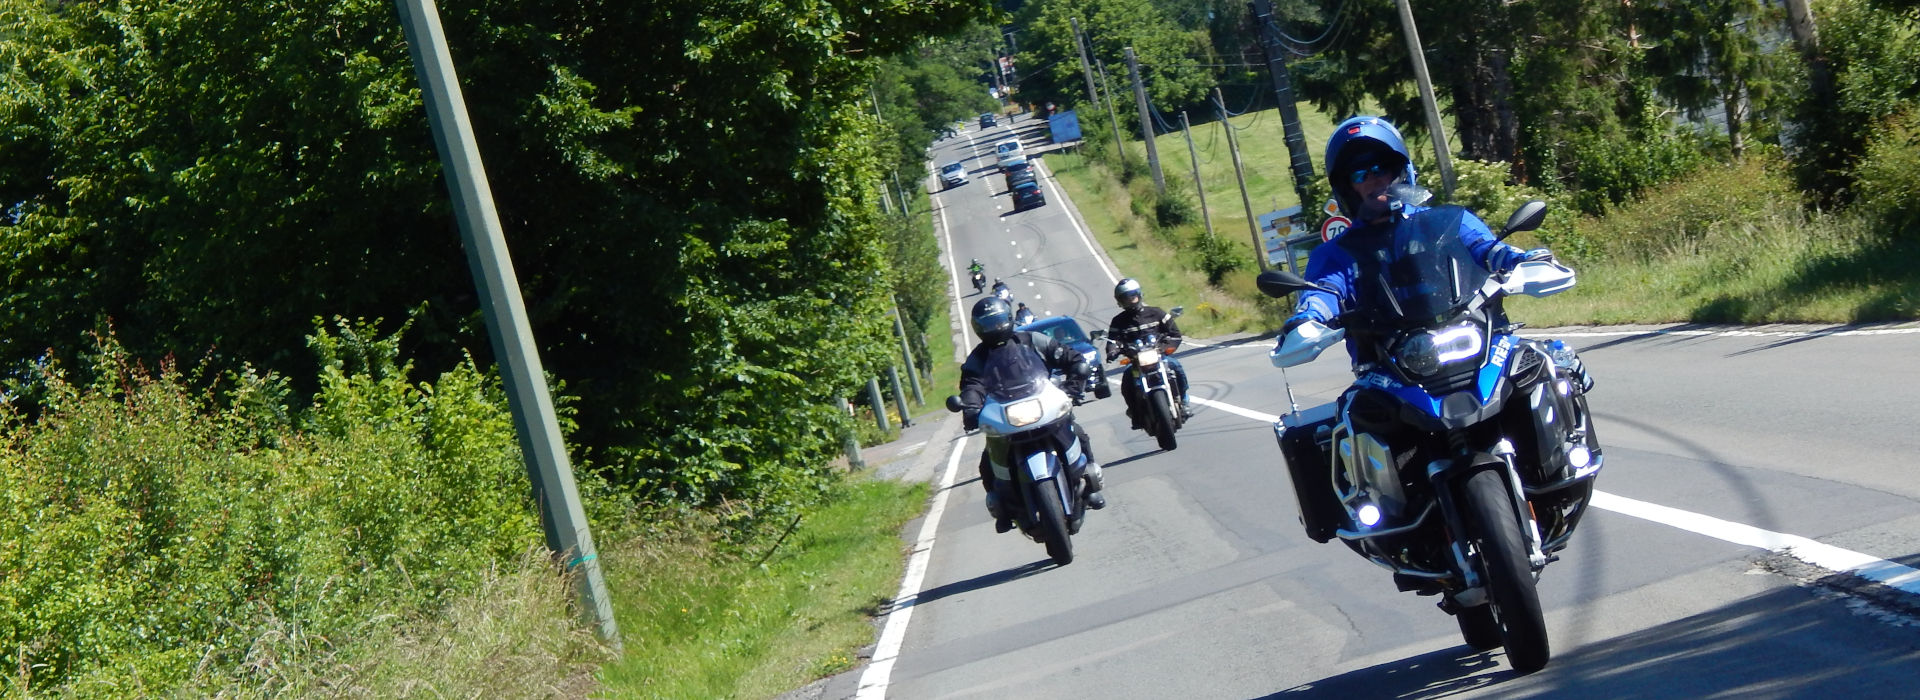 Motorrijschool Motorrijbewijspoint Waubach motorrijlessen